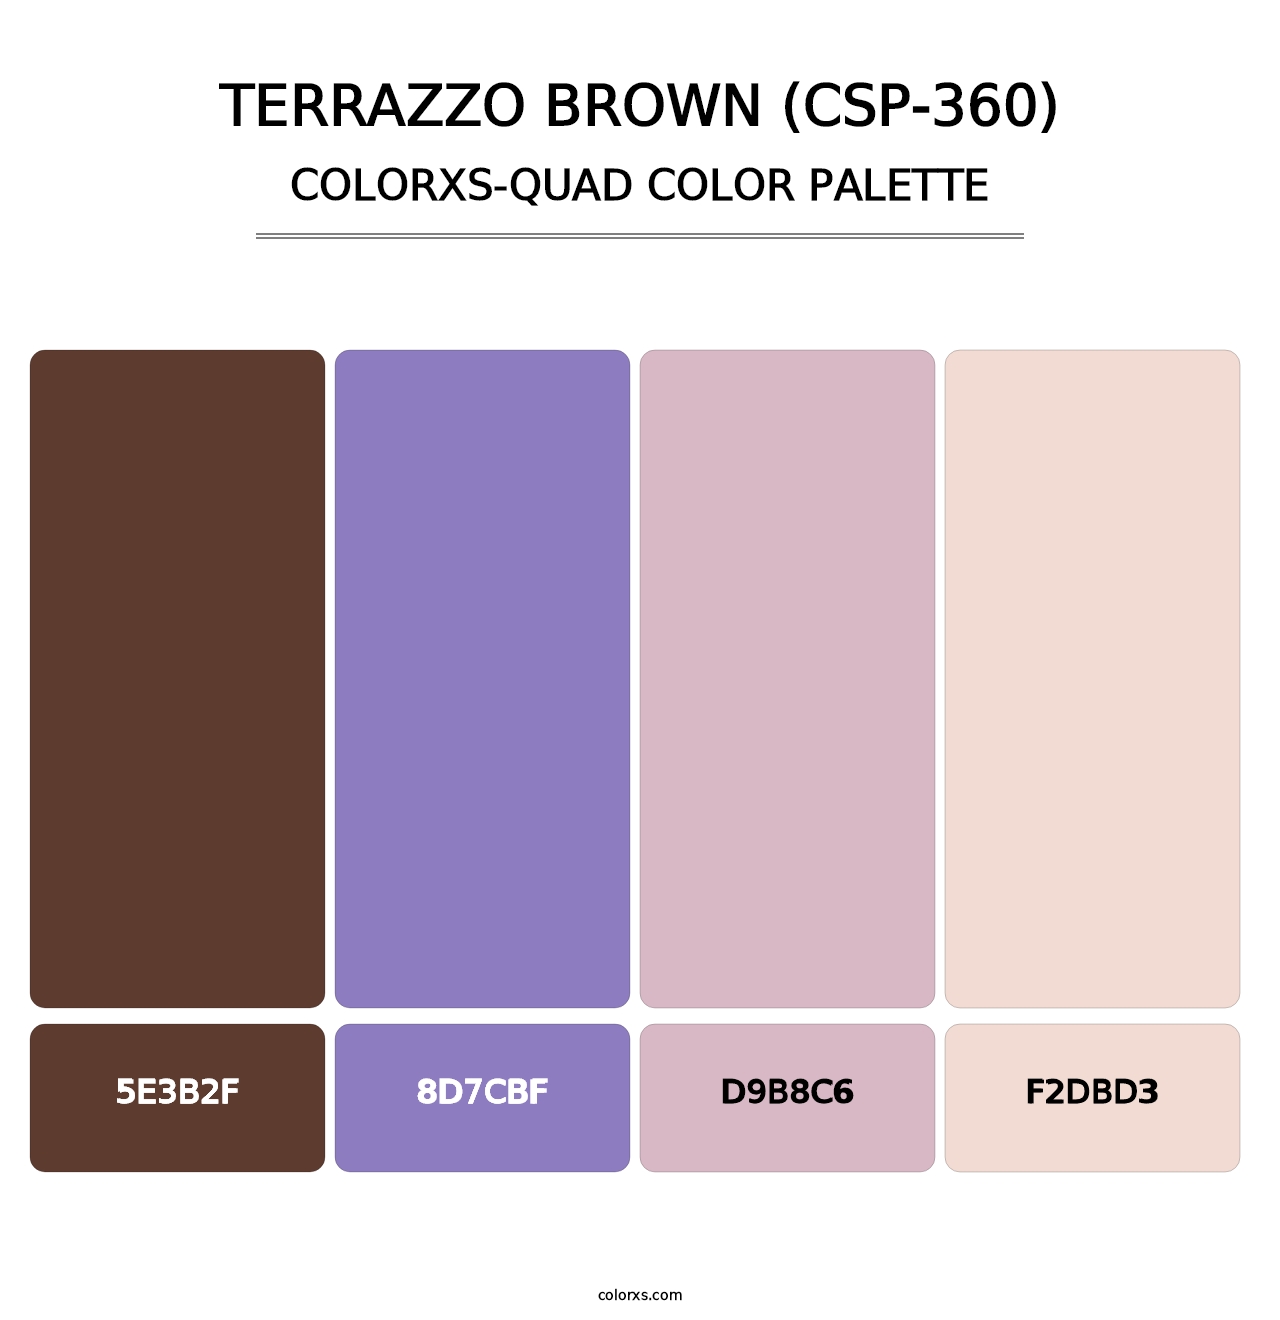 Terrazzo Brown (CSP-360) - Colorxs Quad Palette